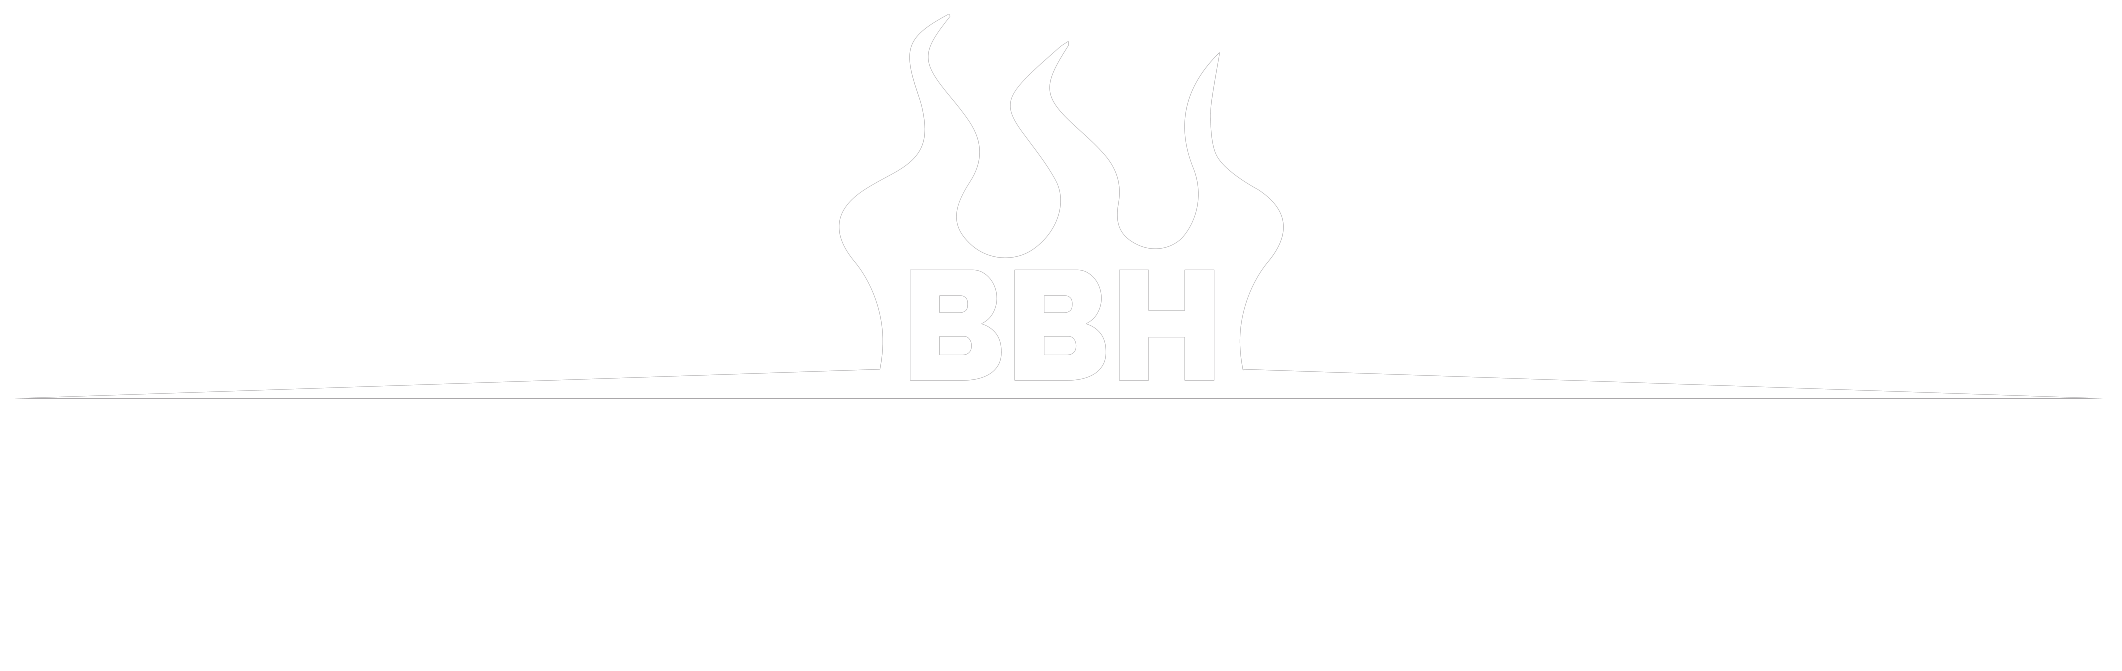 BBH | Böddeker Brennholz Handel